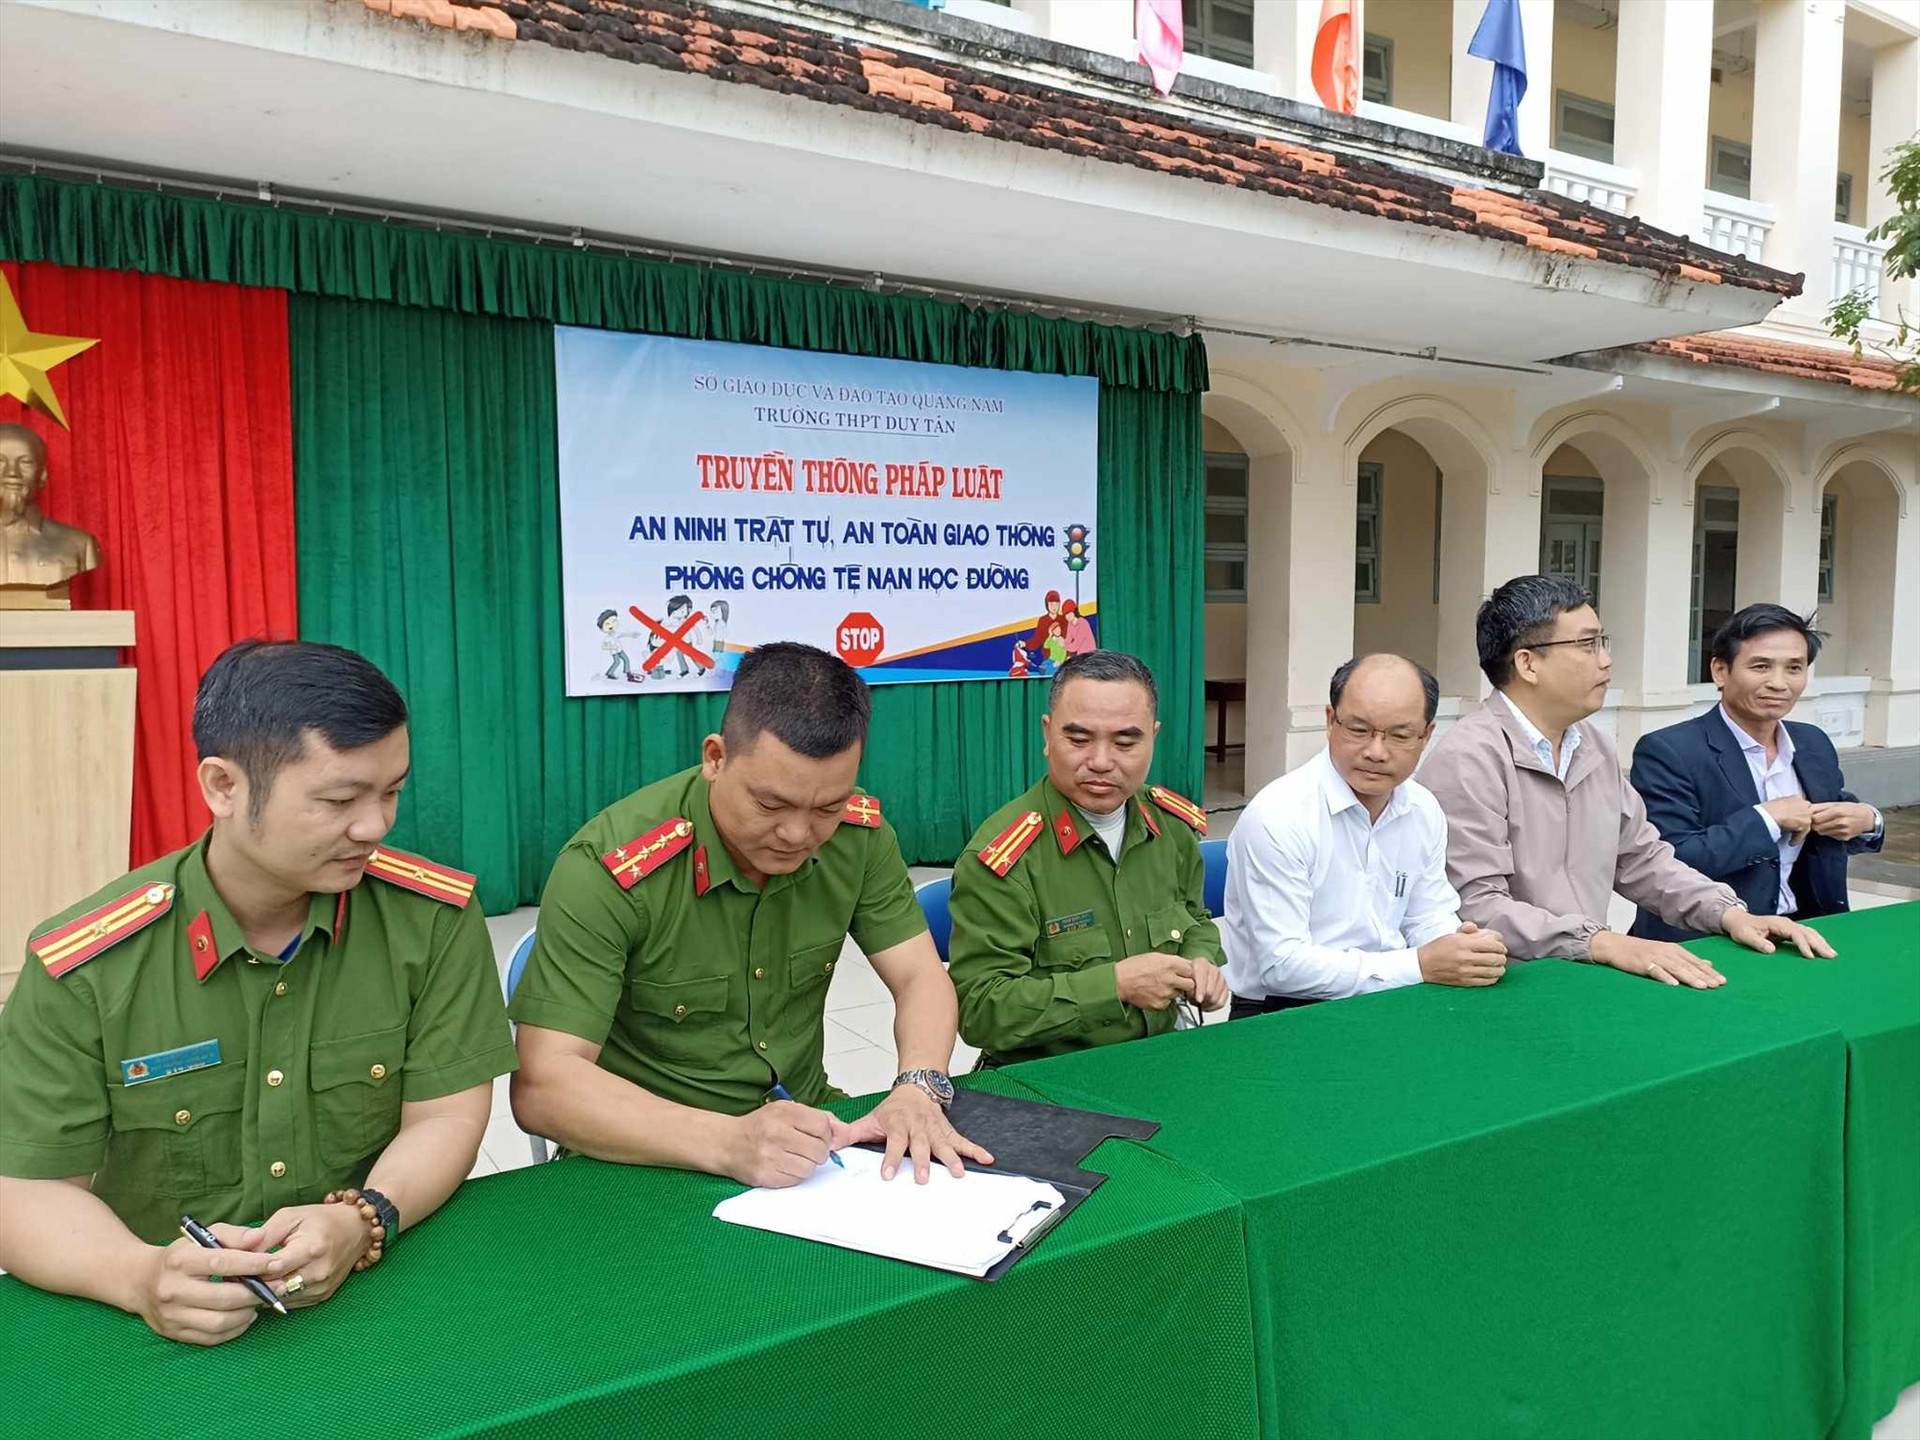 Lễ ký kết đảm bảo an ninh trật tự giữa Trường THPT Duy Tân và các địa phương có học sinh học tại trường. Ảnh: L.D